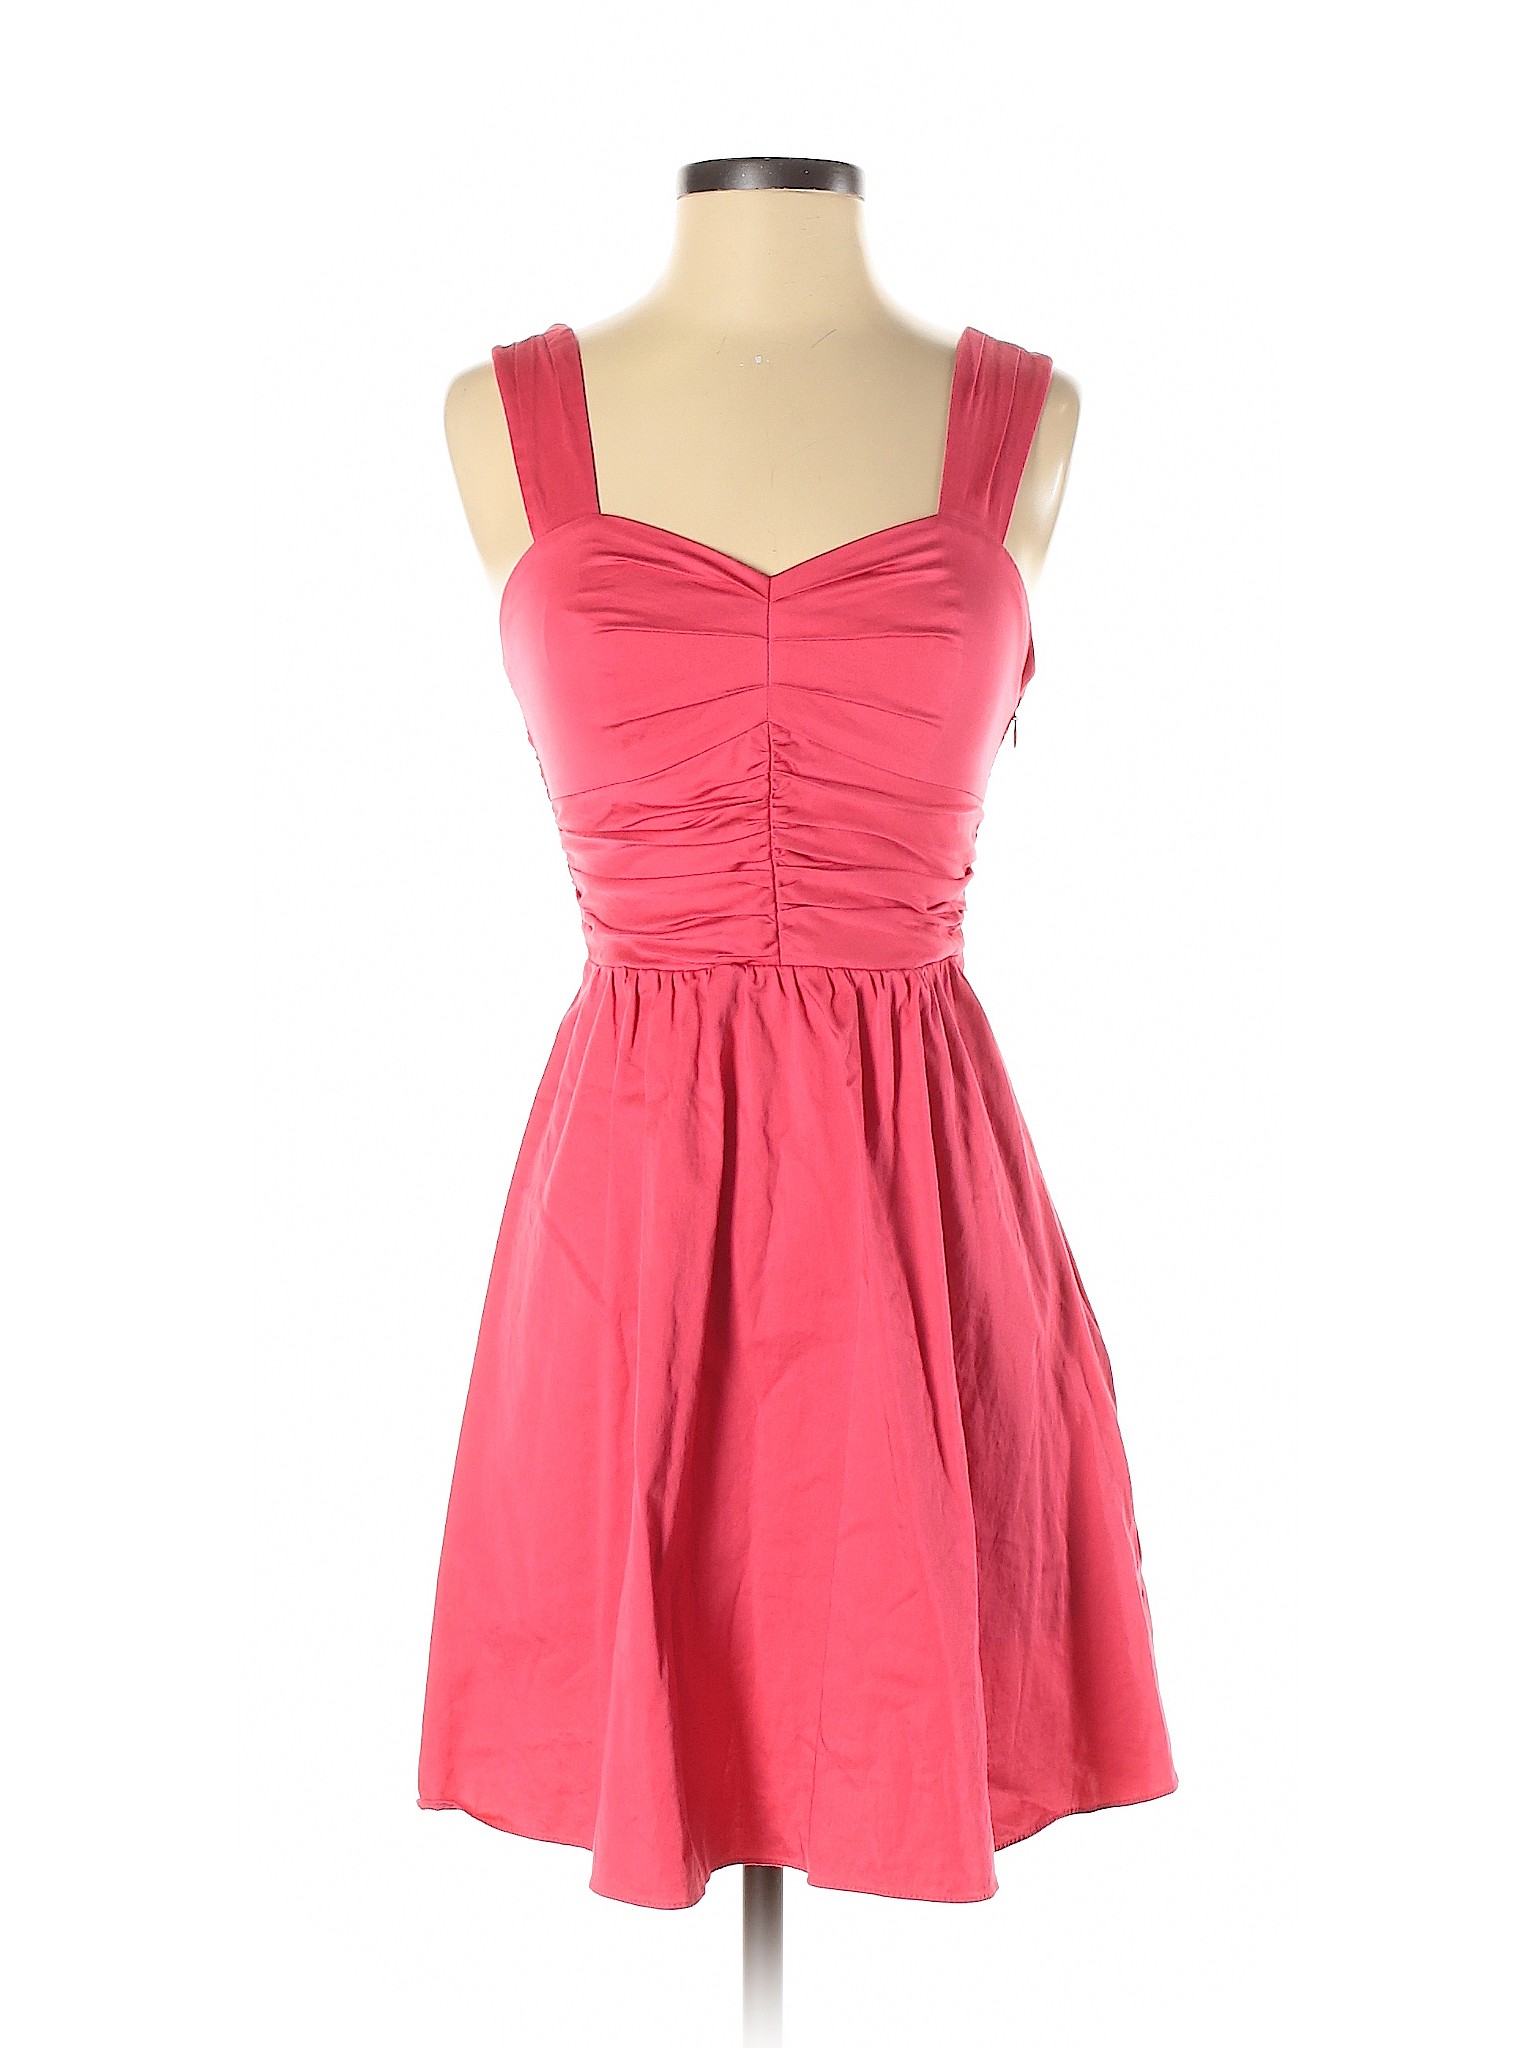 Express Women Pink Casual Dress 2 | eBay